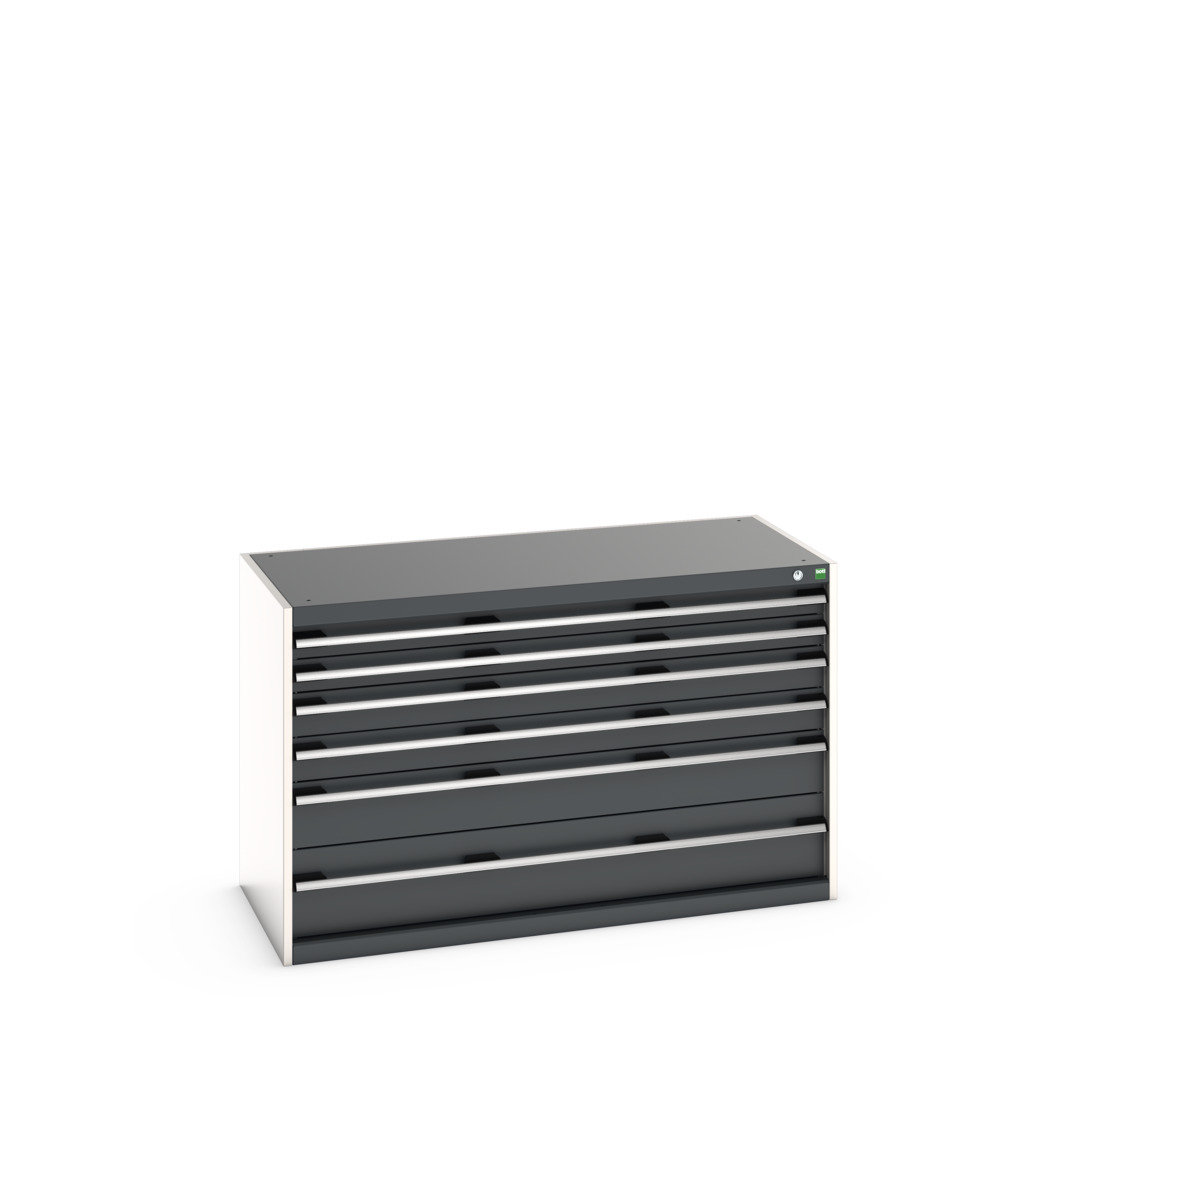 40022110.19V - cubio drawer cabinet